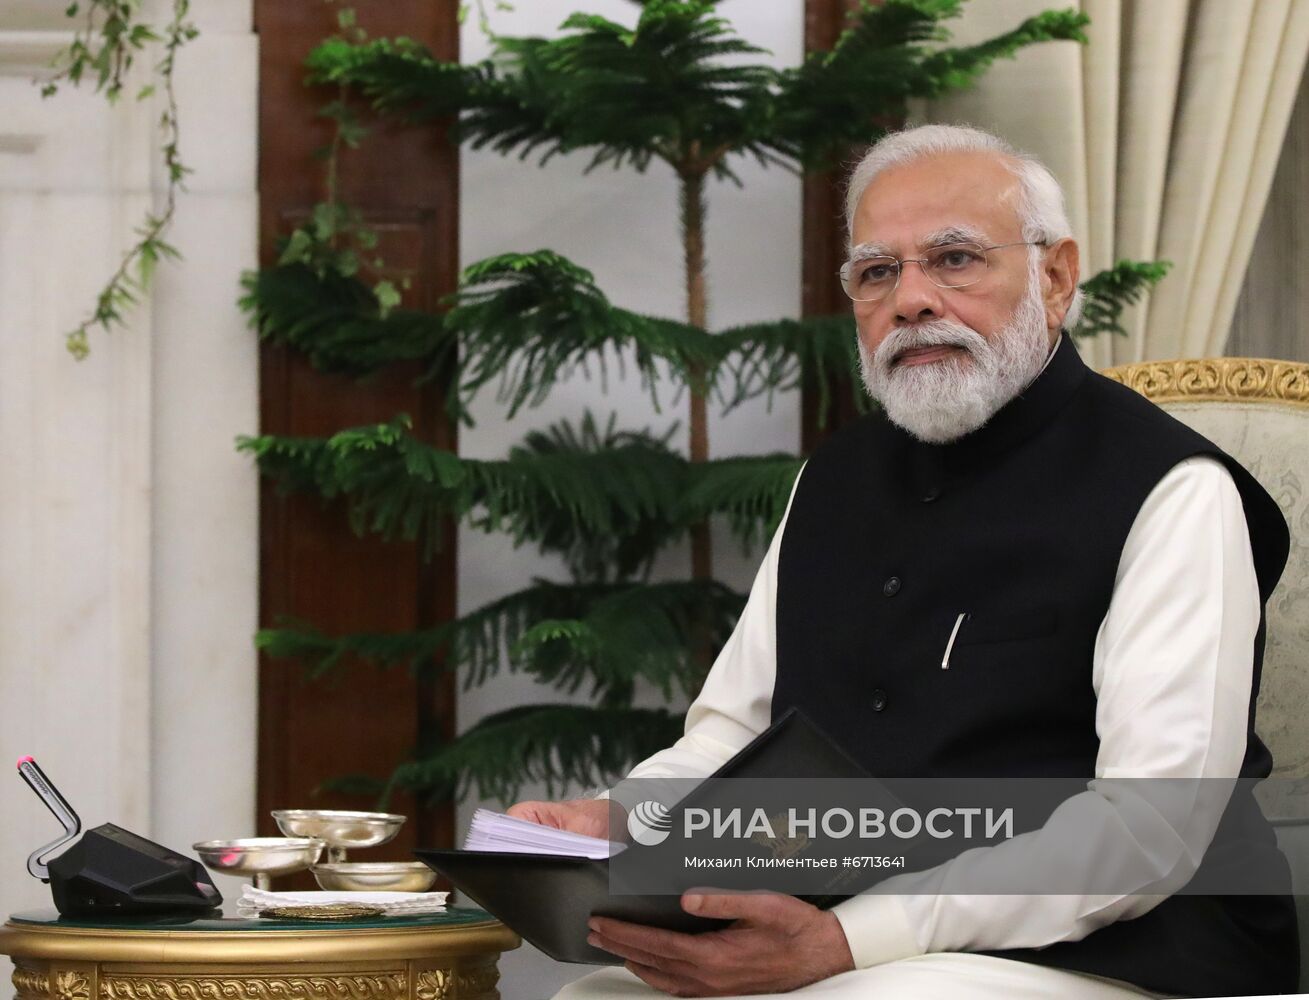 Рабочий визит президента РФ В. Путина в Индию